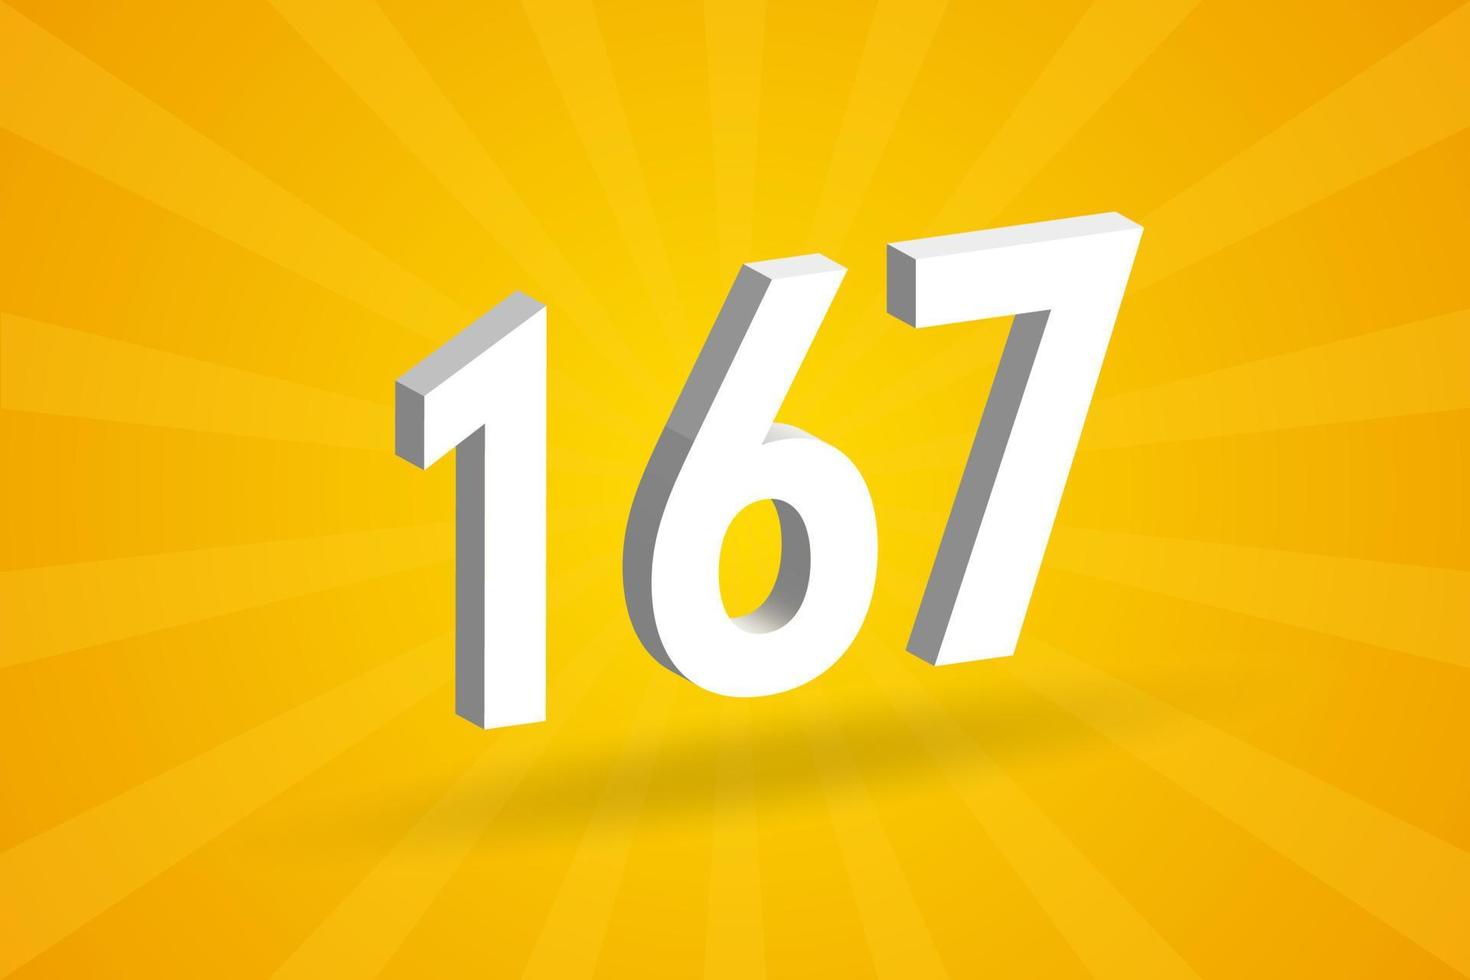 3d 167 numero font alfabeto. bianca 3d numero 167 con giallo sfondo vettore